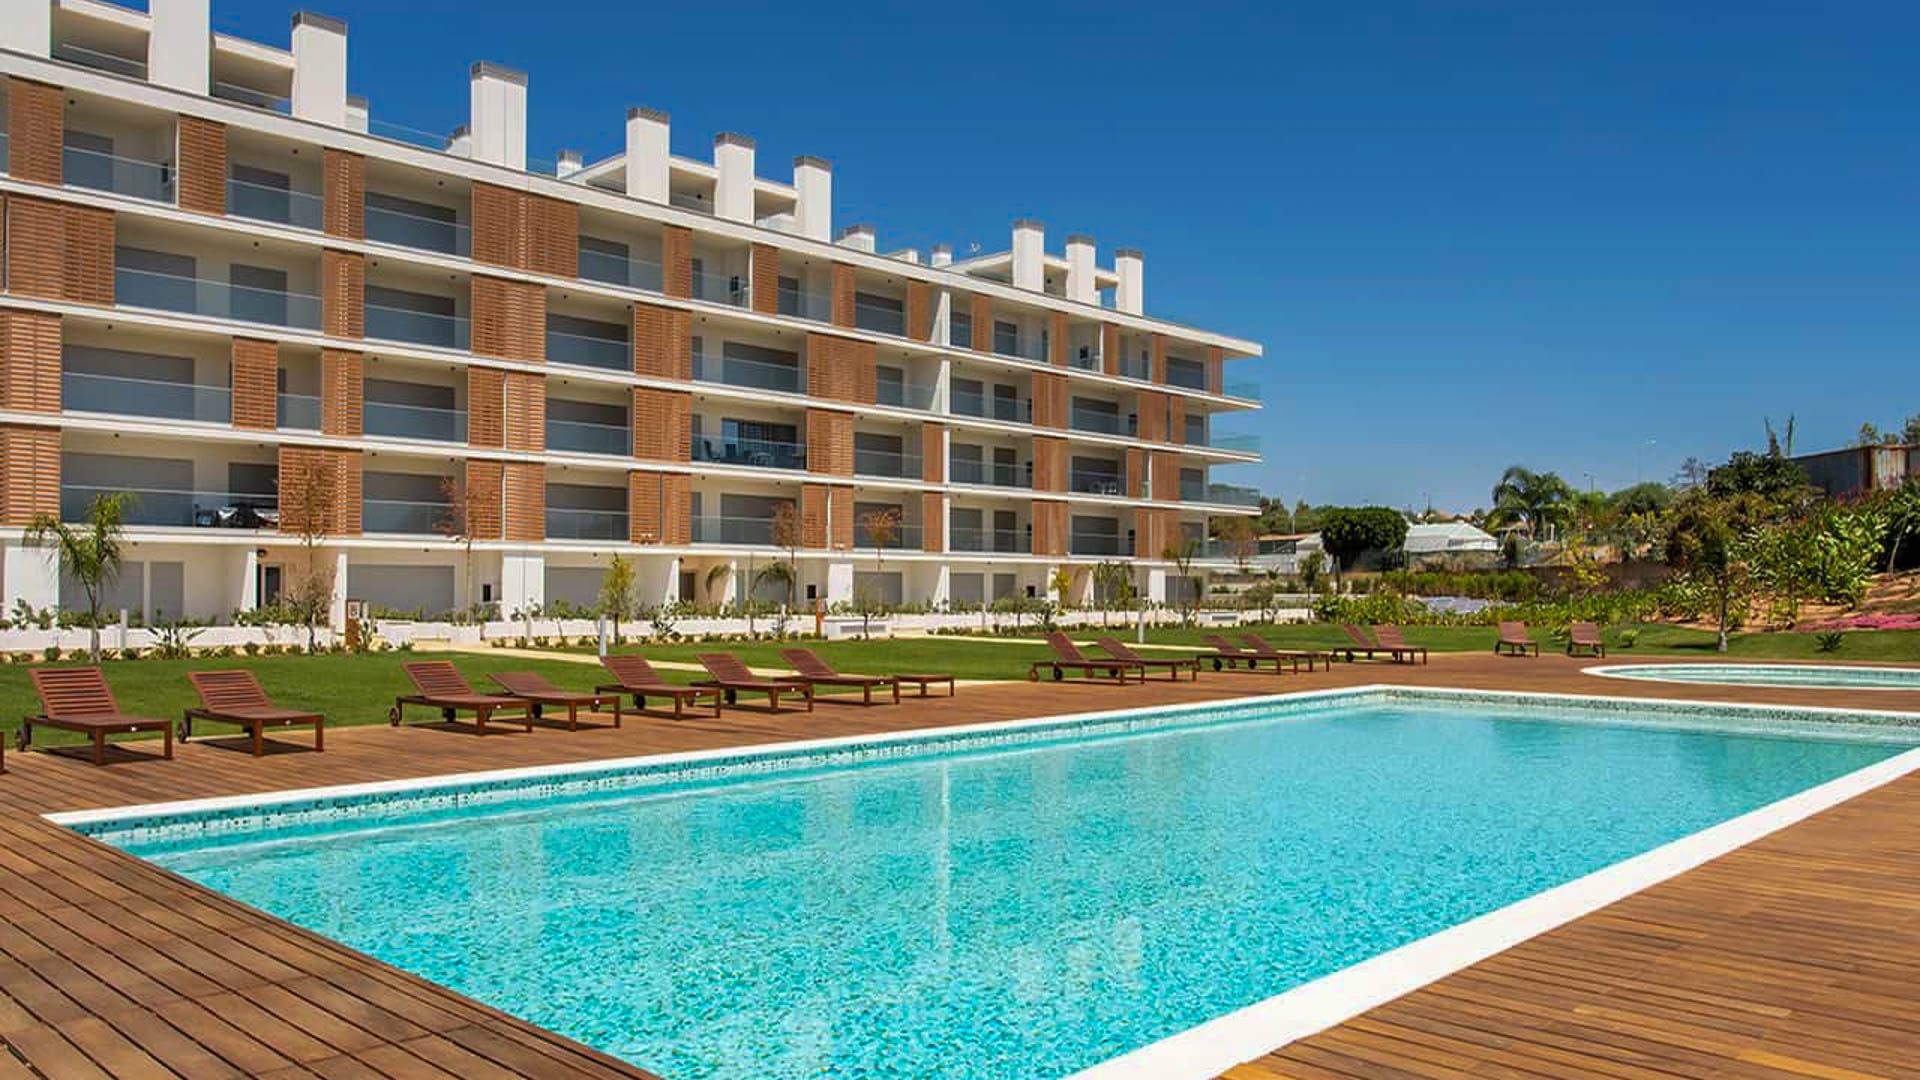 Nouvel appartement de luxe de 3 chambres avec piscine, Albufeira | VM1867 Appartements de luxe de 3 chambres à coucher dans un nouveau développement écologique, à un jet de pierre des superbes plages d'Albufeira et de ses commodités.